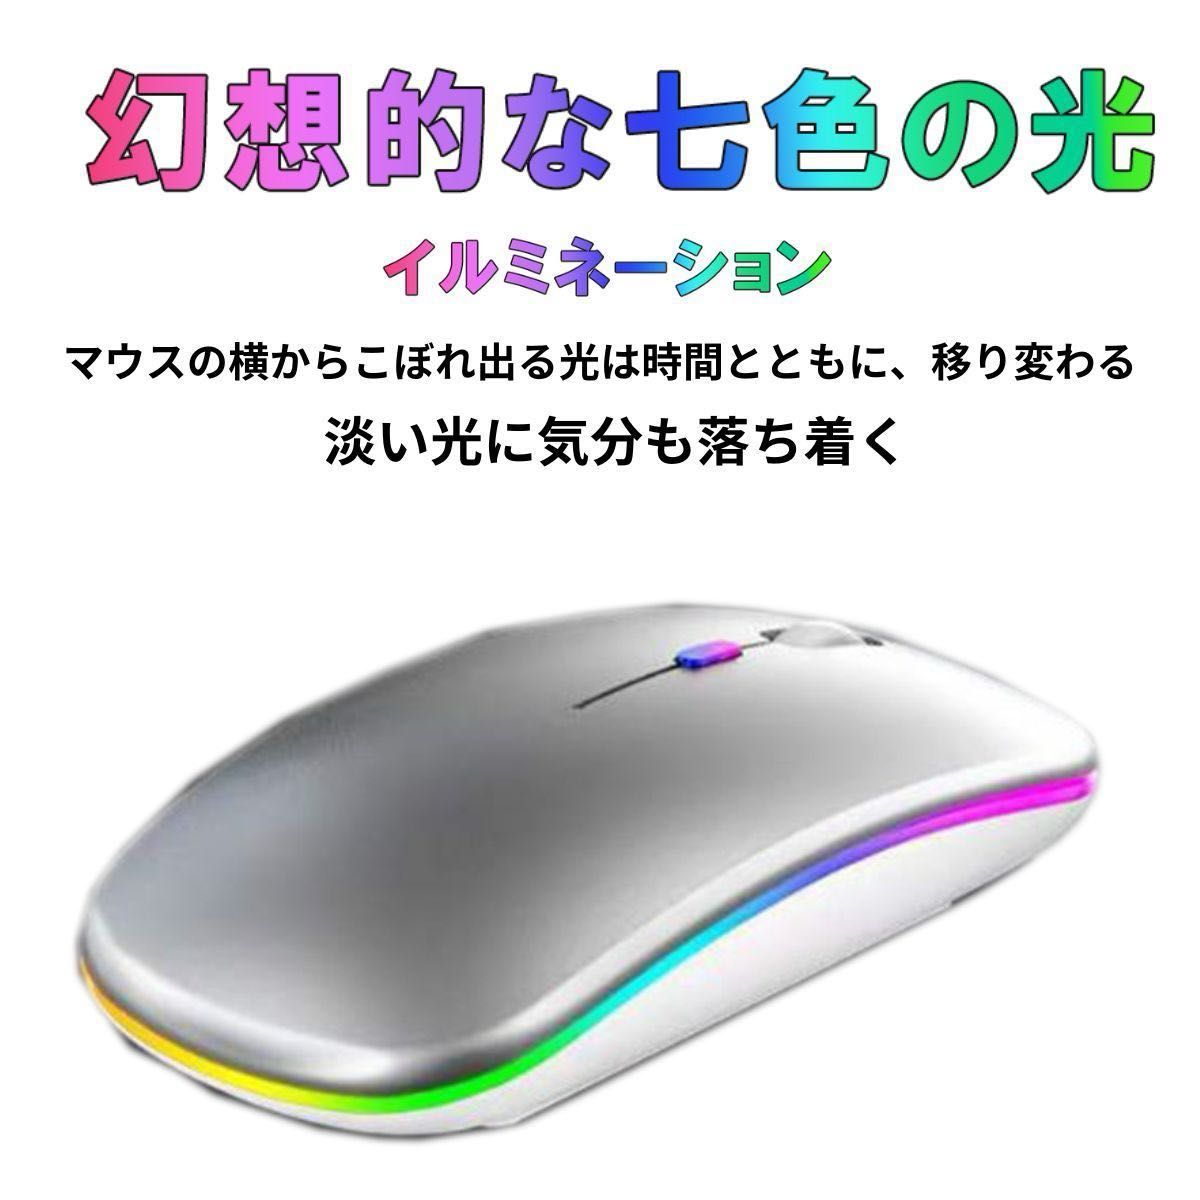 マウス ワイヤレス 充電マウス デュアル接続 bluetoothマウス USBポート iPad PC Win10 無線マウス 